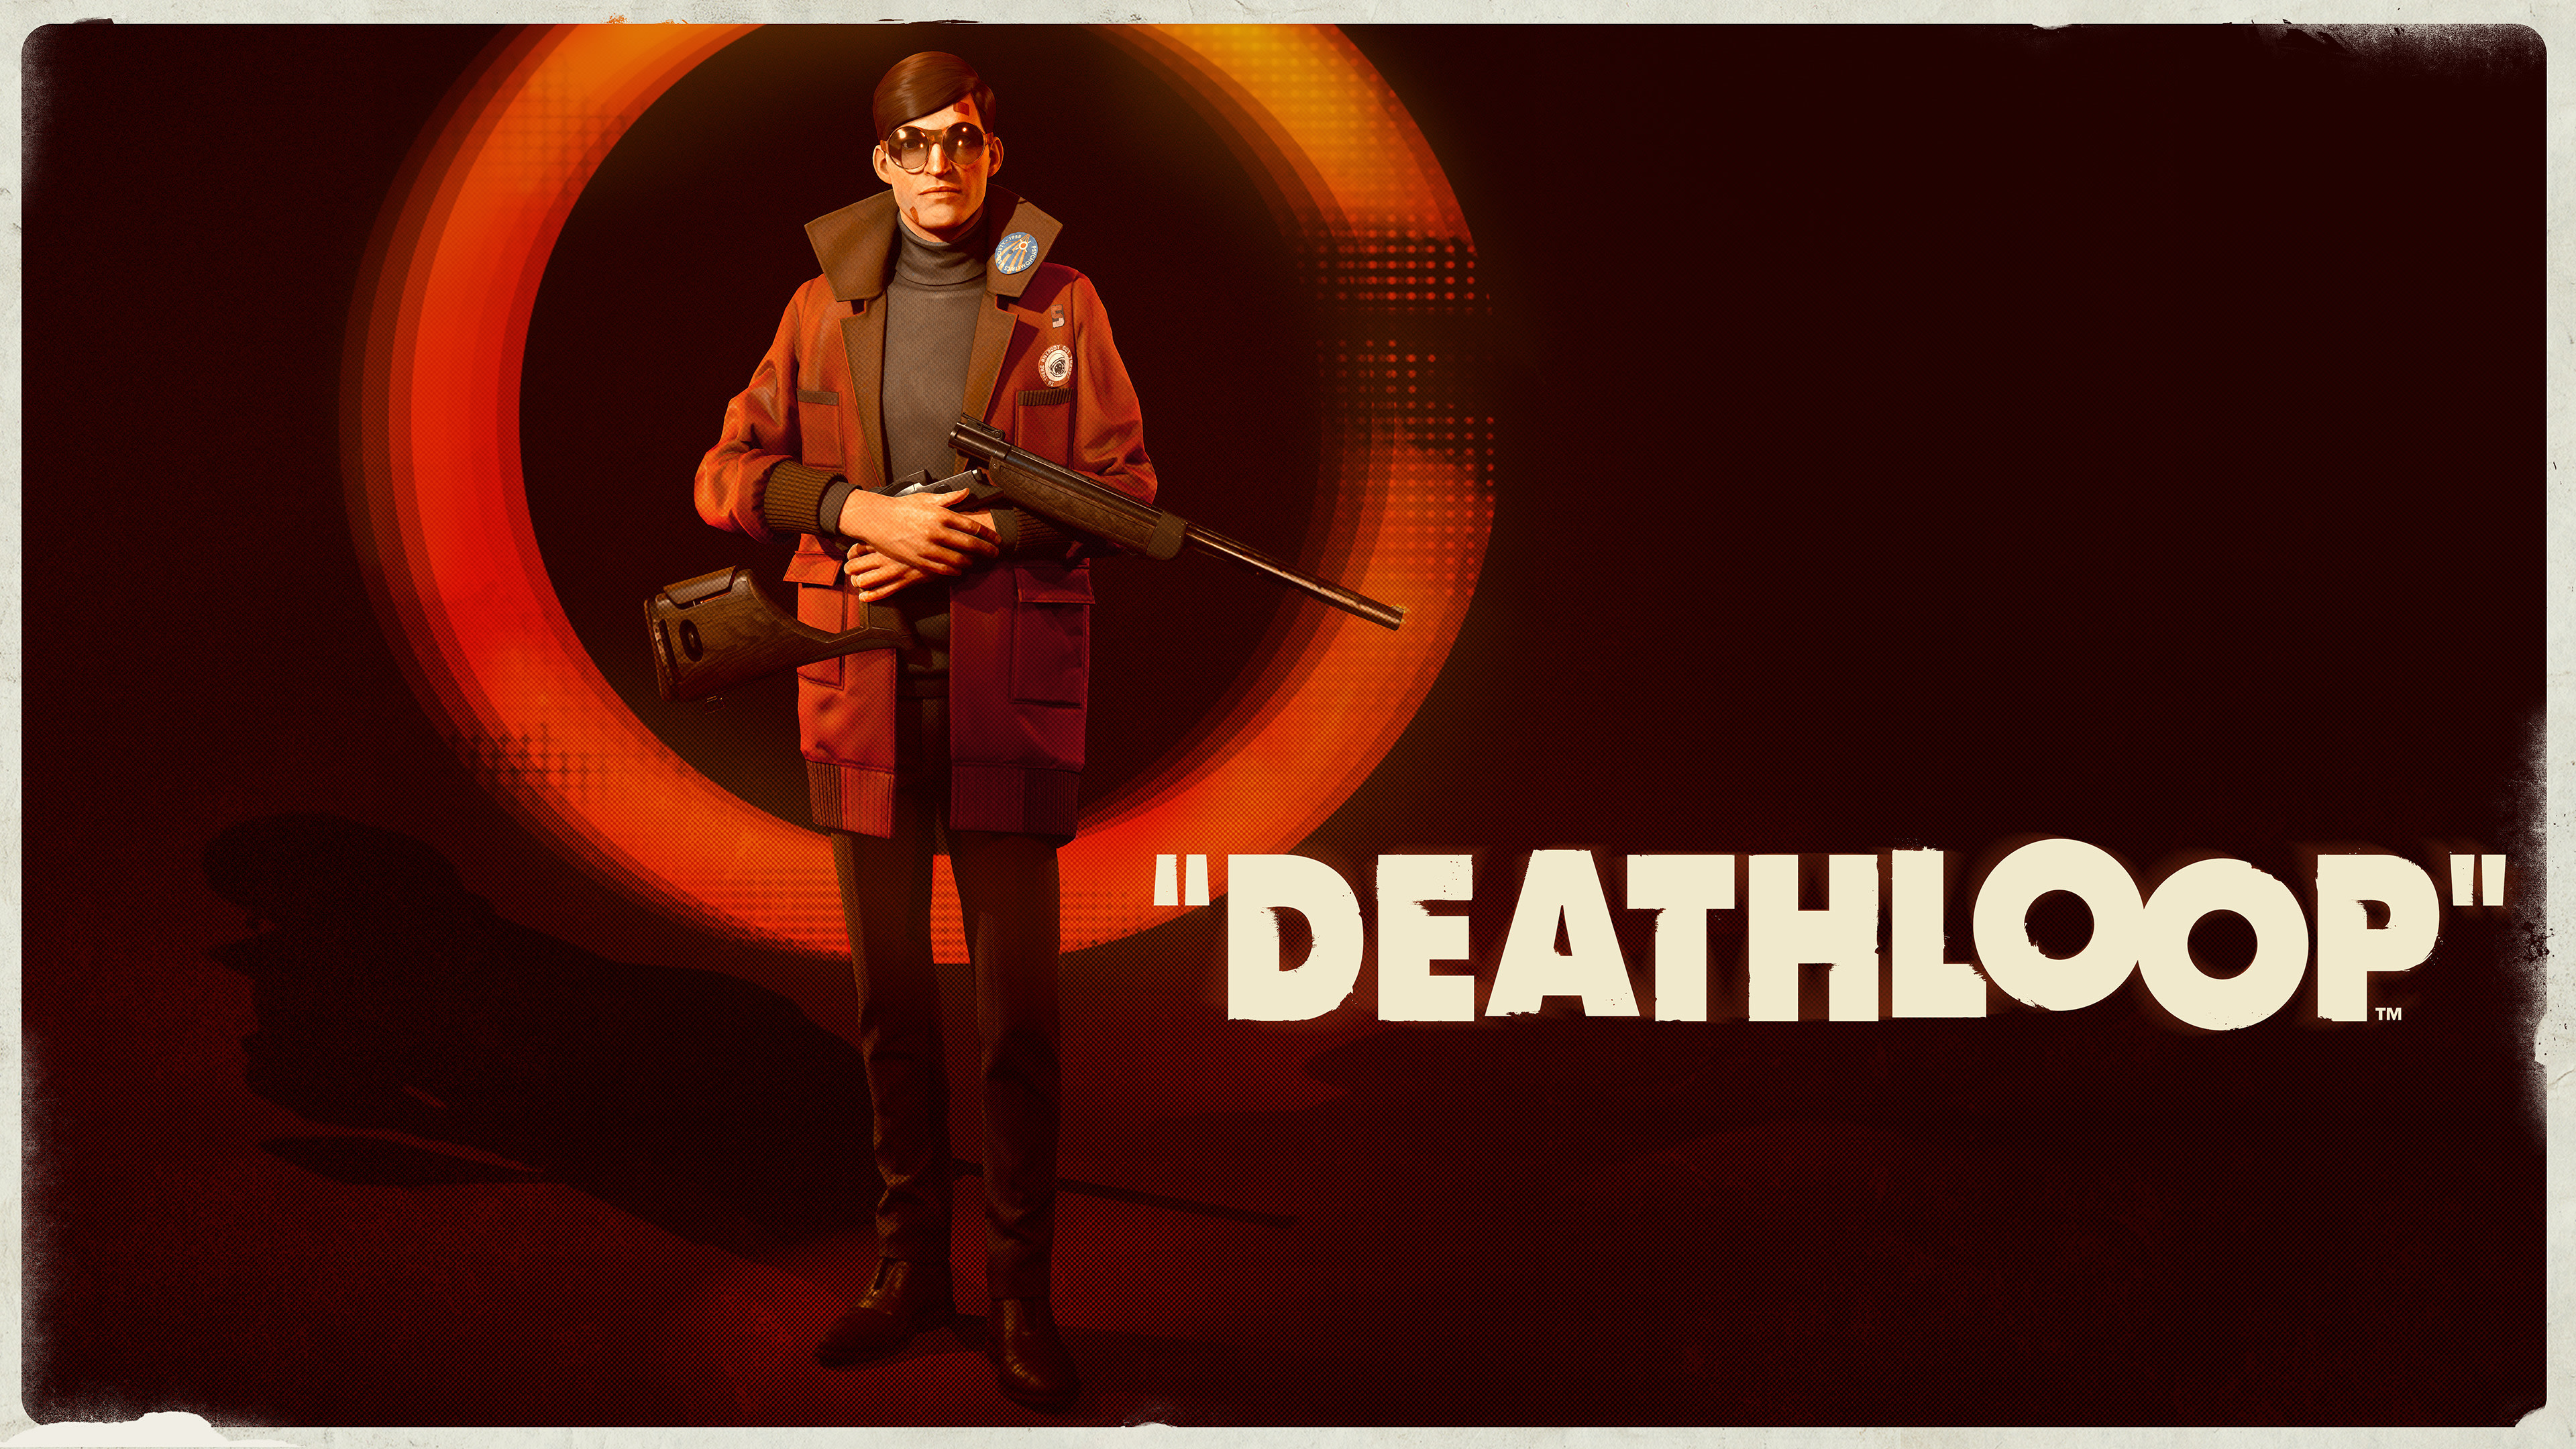 Video Game Deathloop HD Wallpaper Background Image.